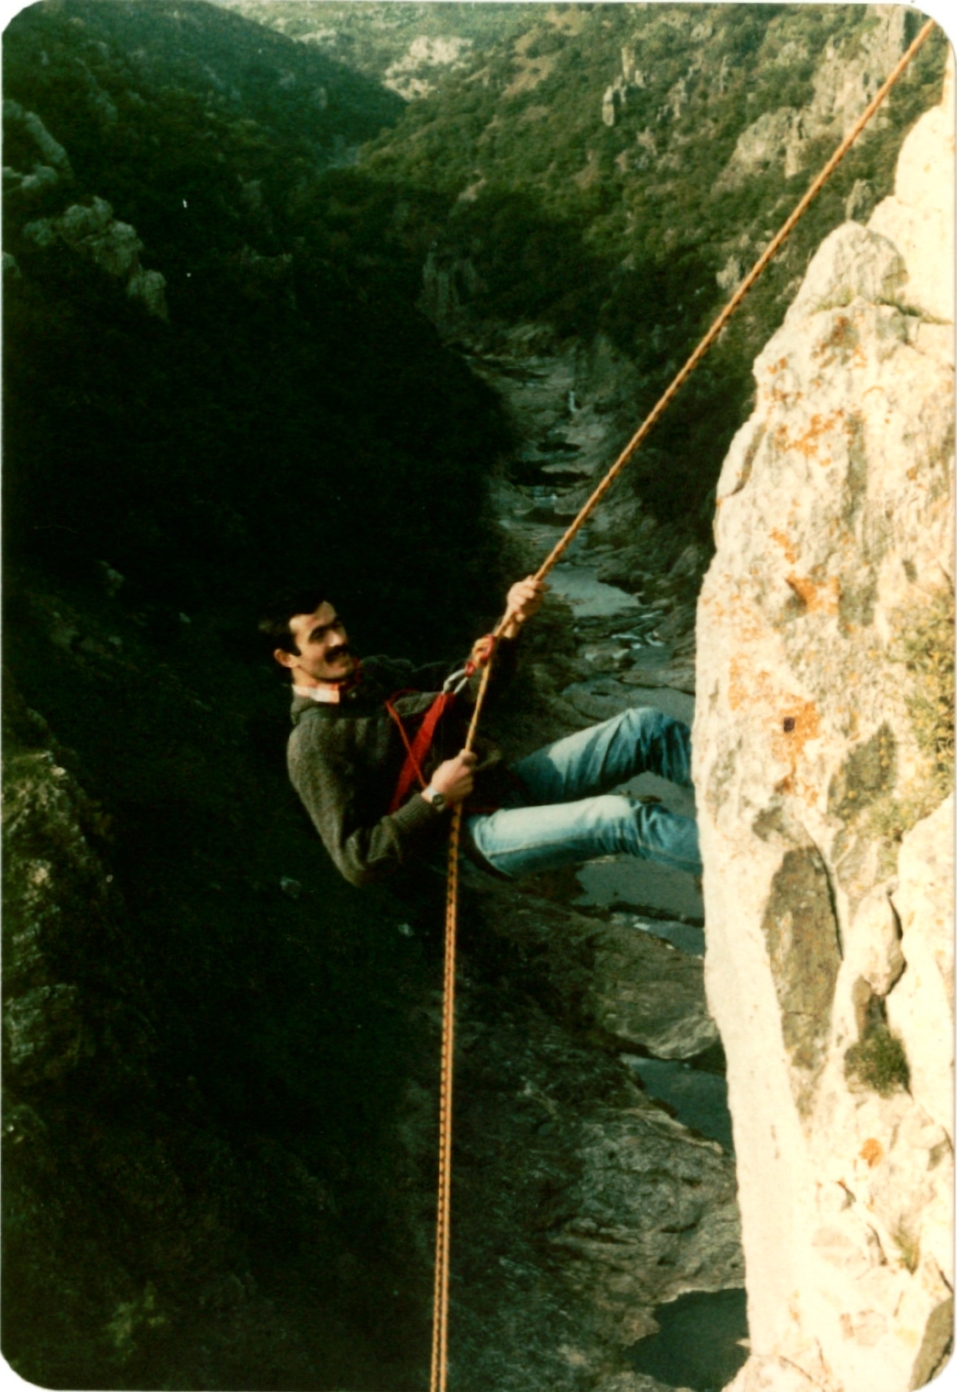 1997 senesinde yaşamını yitiren Mehmet Yüregilli Ballıkayalar’da bir ip inişinde. Mehmet Yüregilli aynı zamanda İstiklal Caddesi üzerinde ülkemizin ilk dağcılık malzemeleri satan mağazalarından DaSport’un da kurucusuydu.